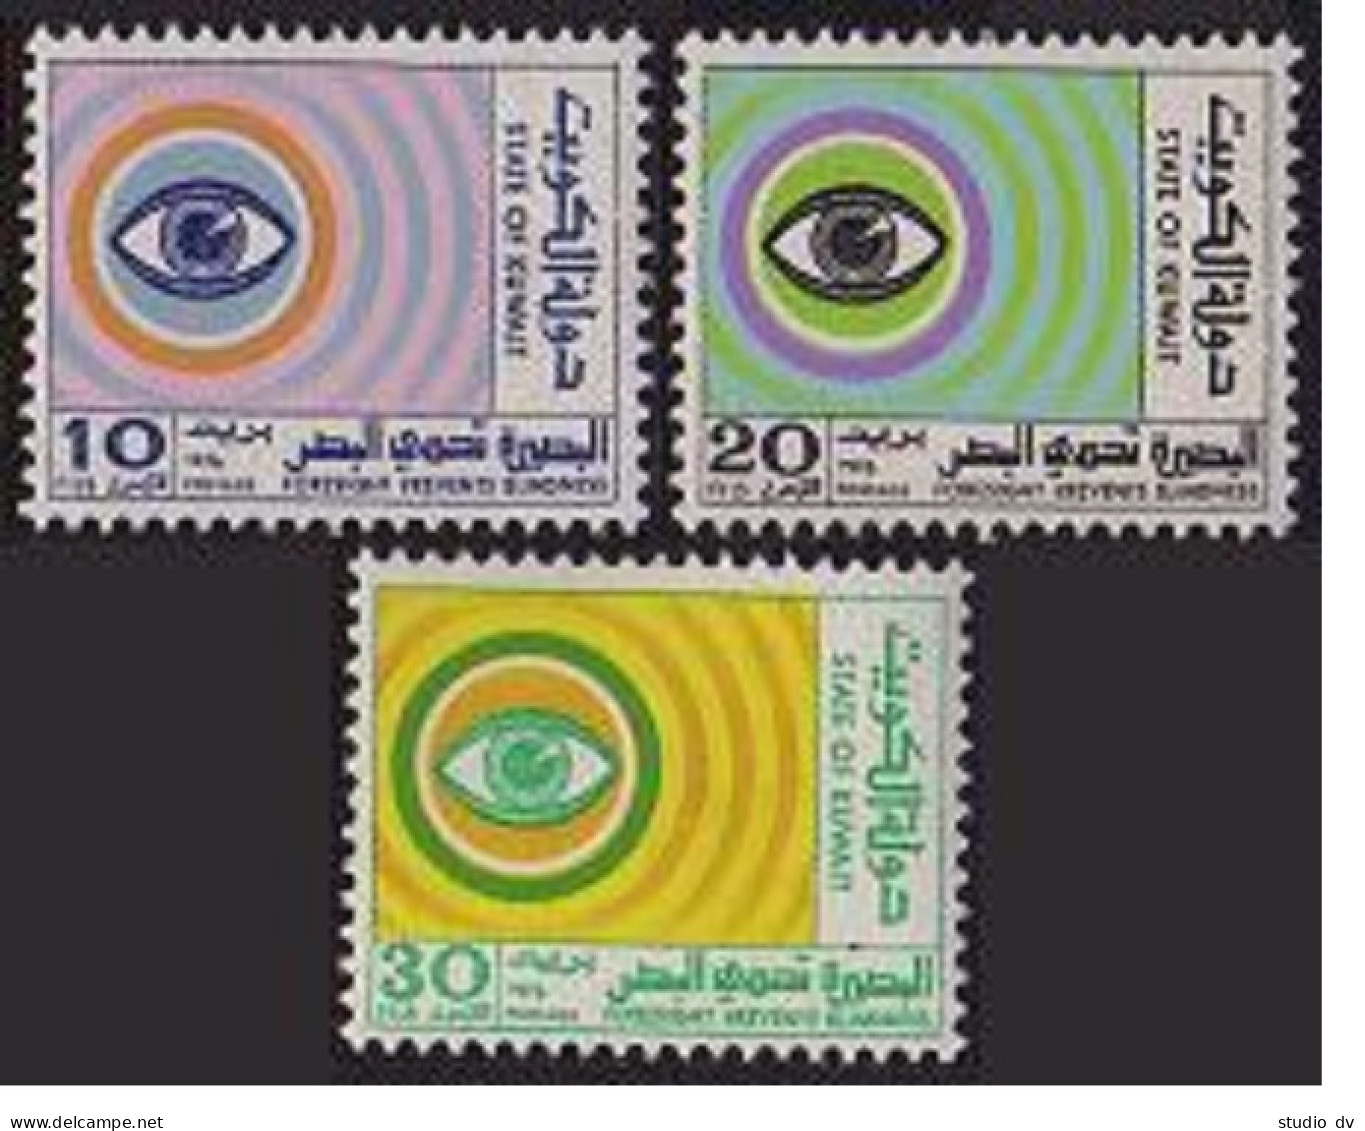 Kuwait 653-655, MNH. Michel 671-673. World Health Day, 1976. Eye. - Kuwait